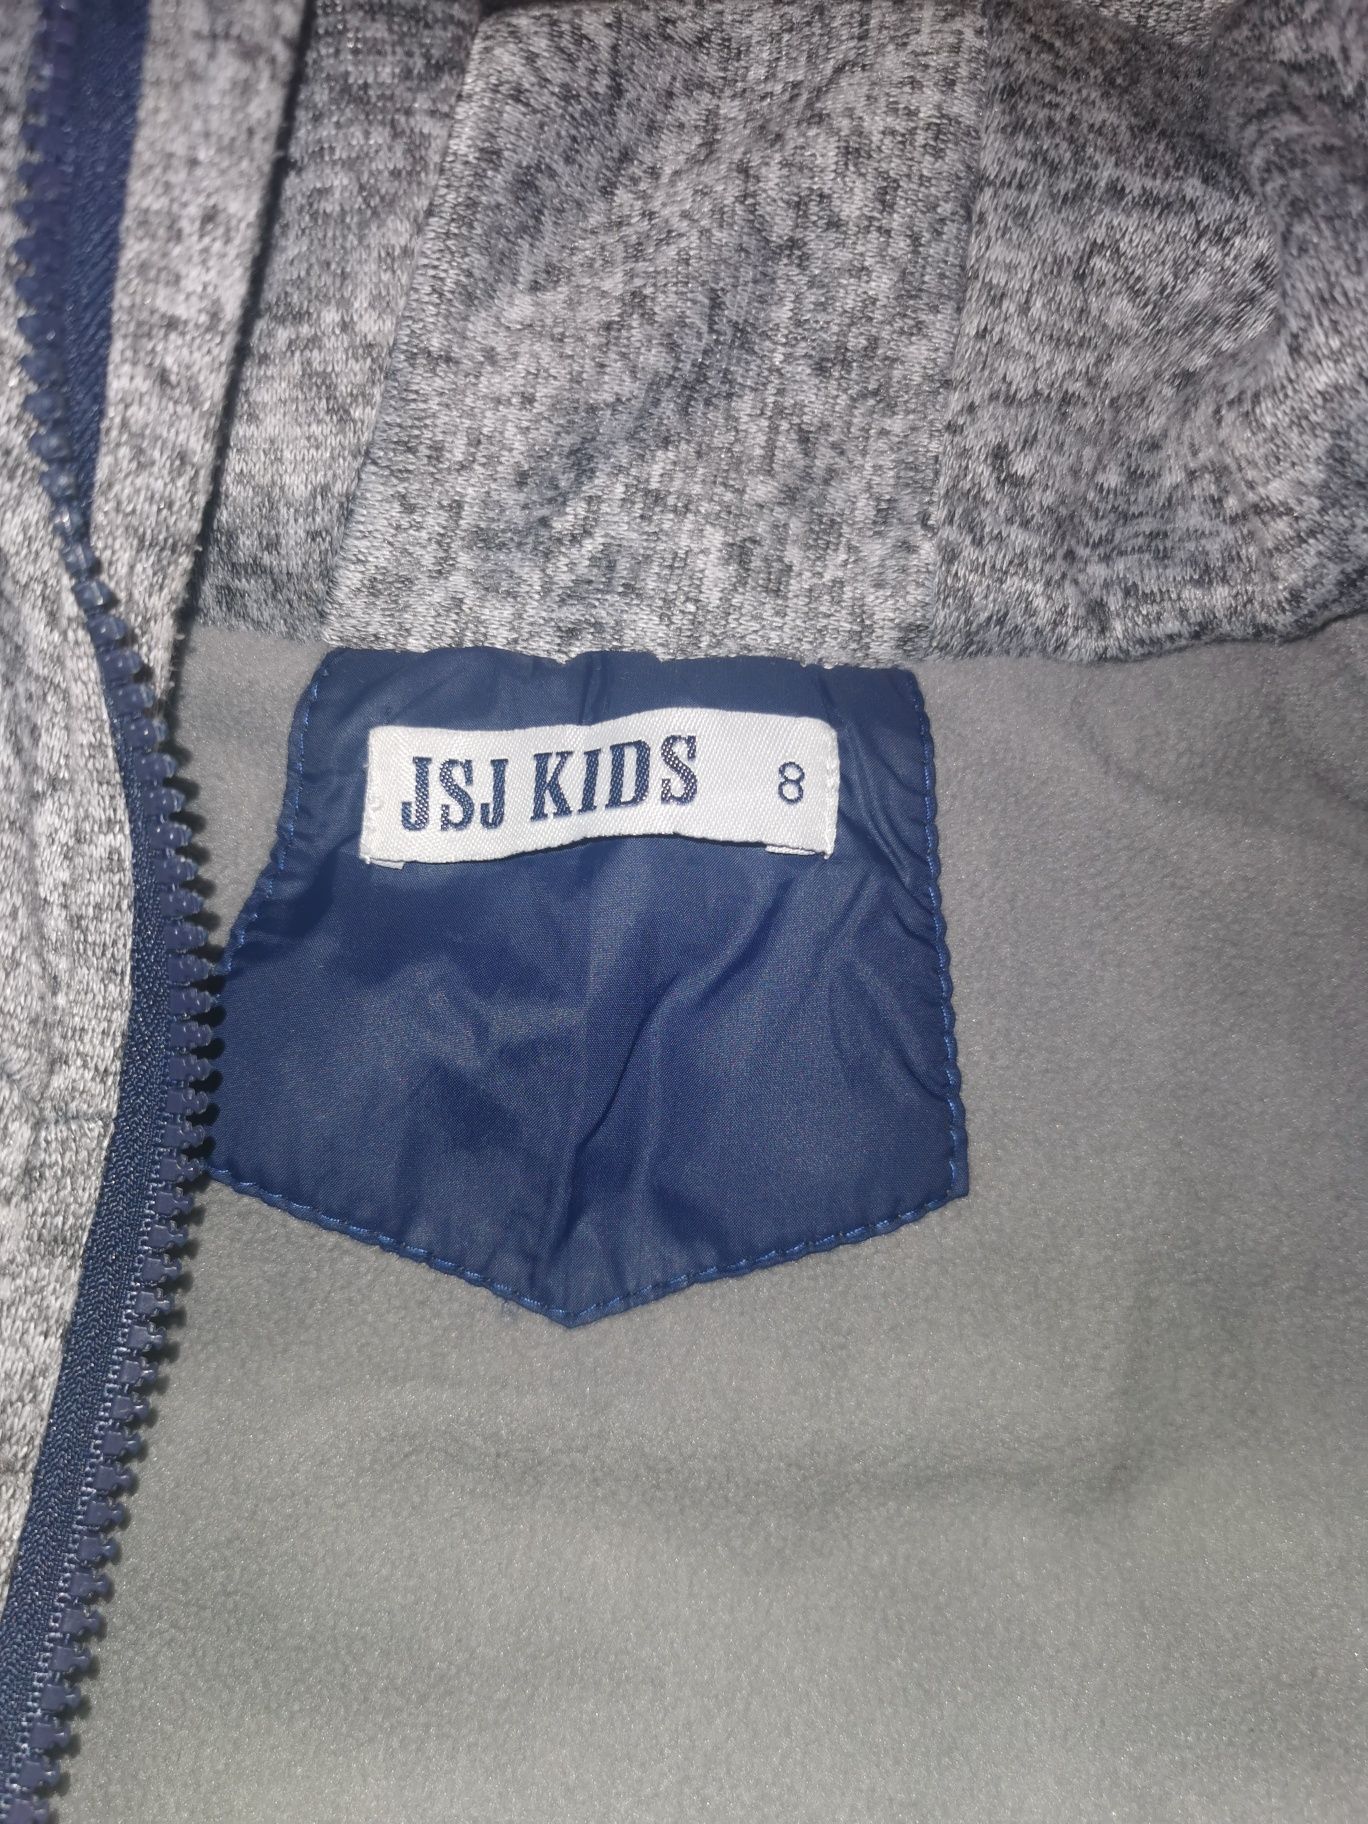 Грейка за момче JSJ Kids 8